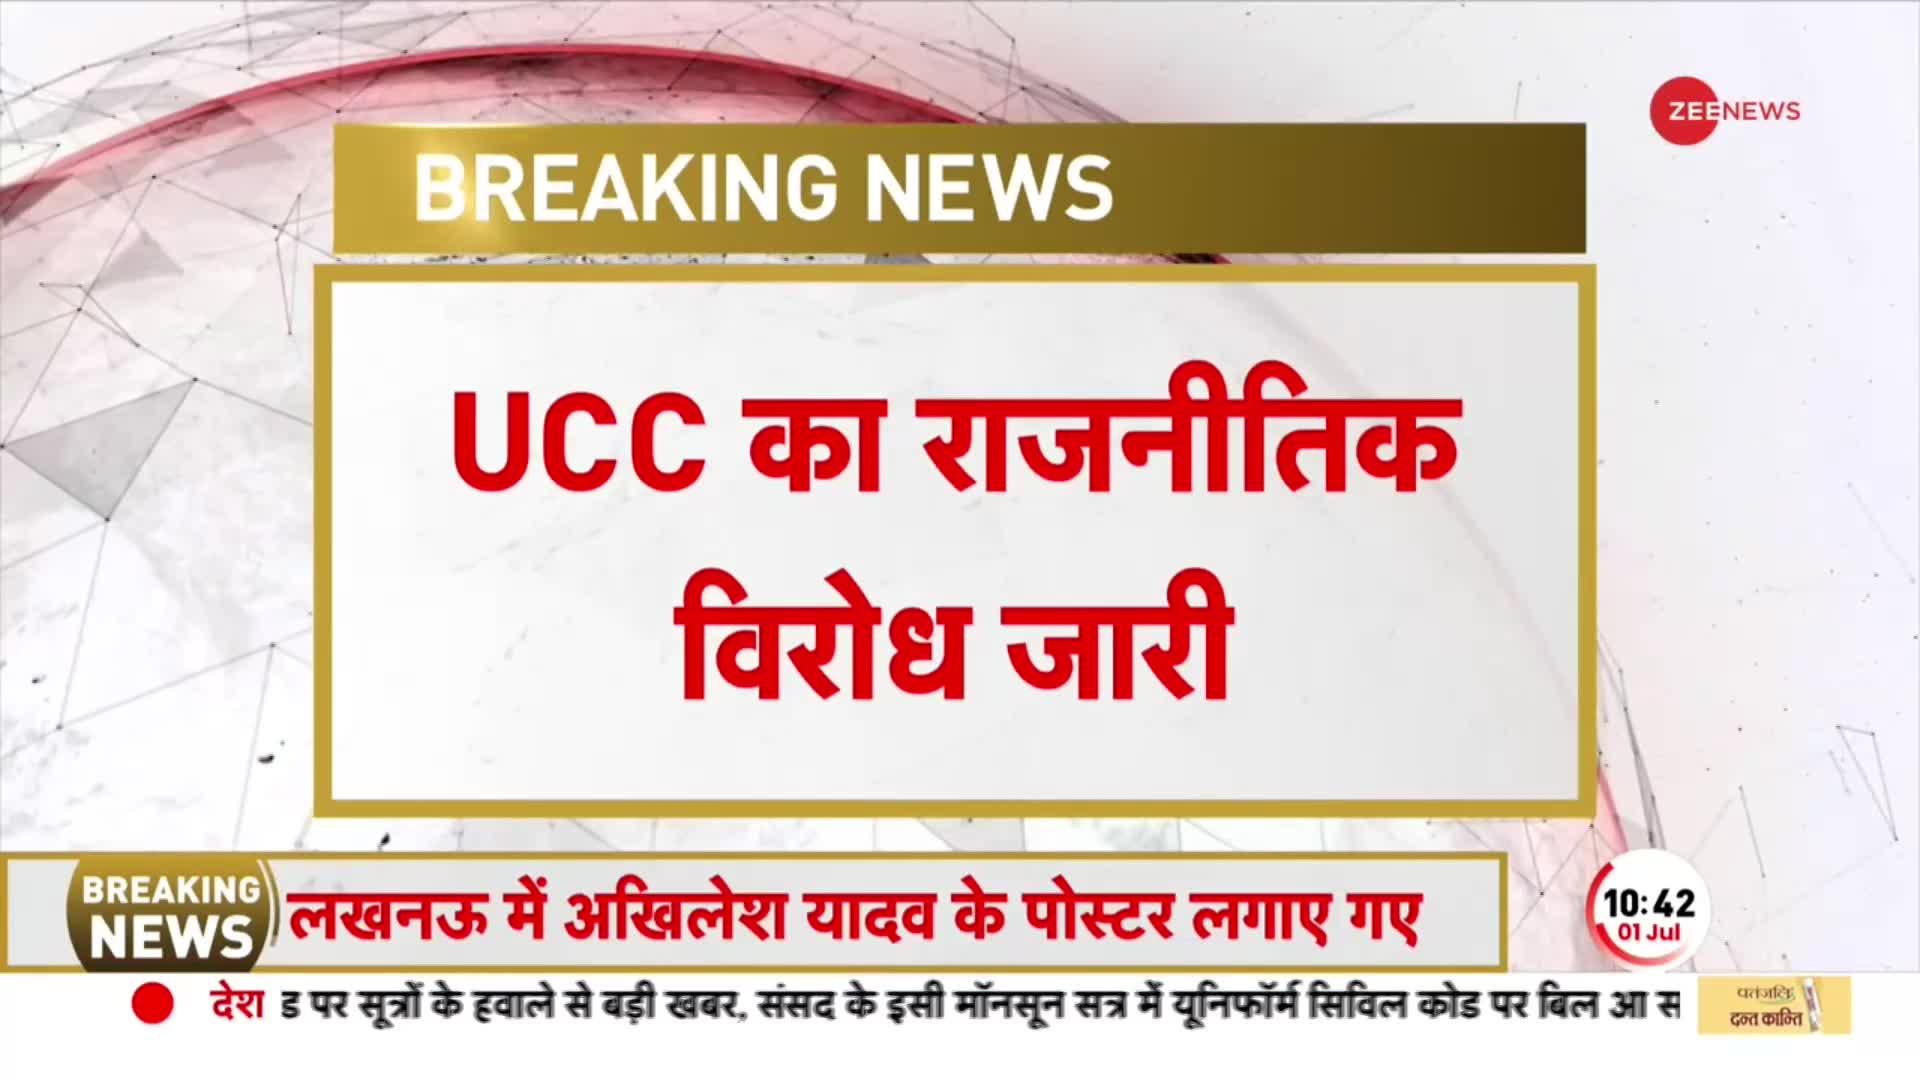 Meghalaya के CM Conrad Sangma ने UCC का किया विरोध, बताया भारत के विचार के खिलाफ